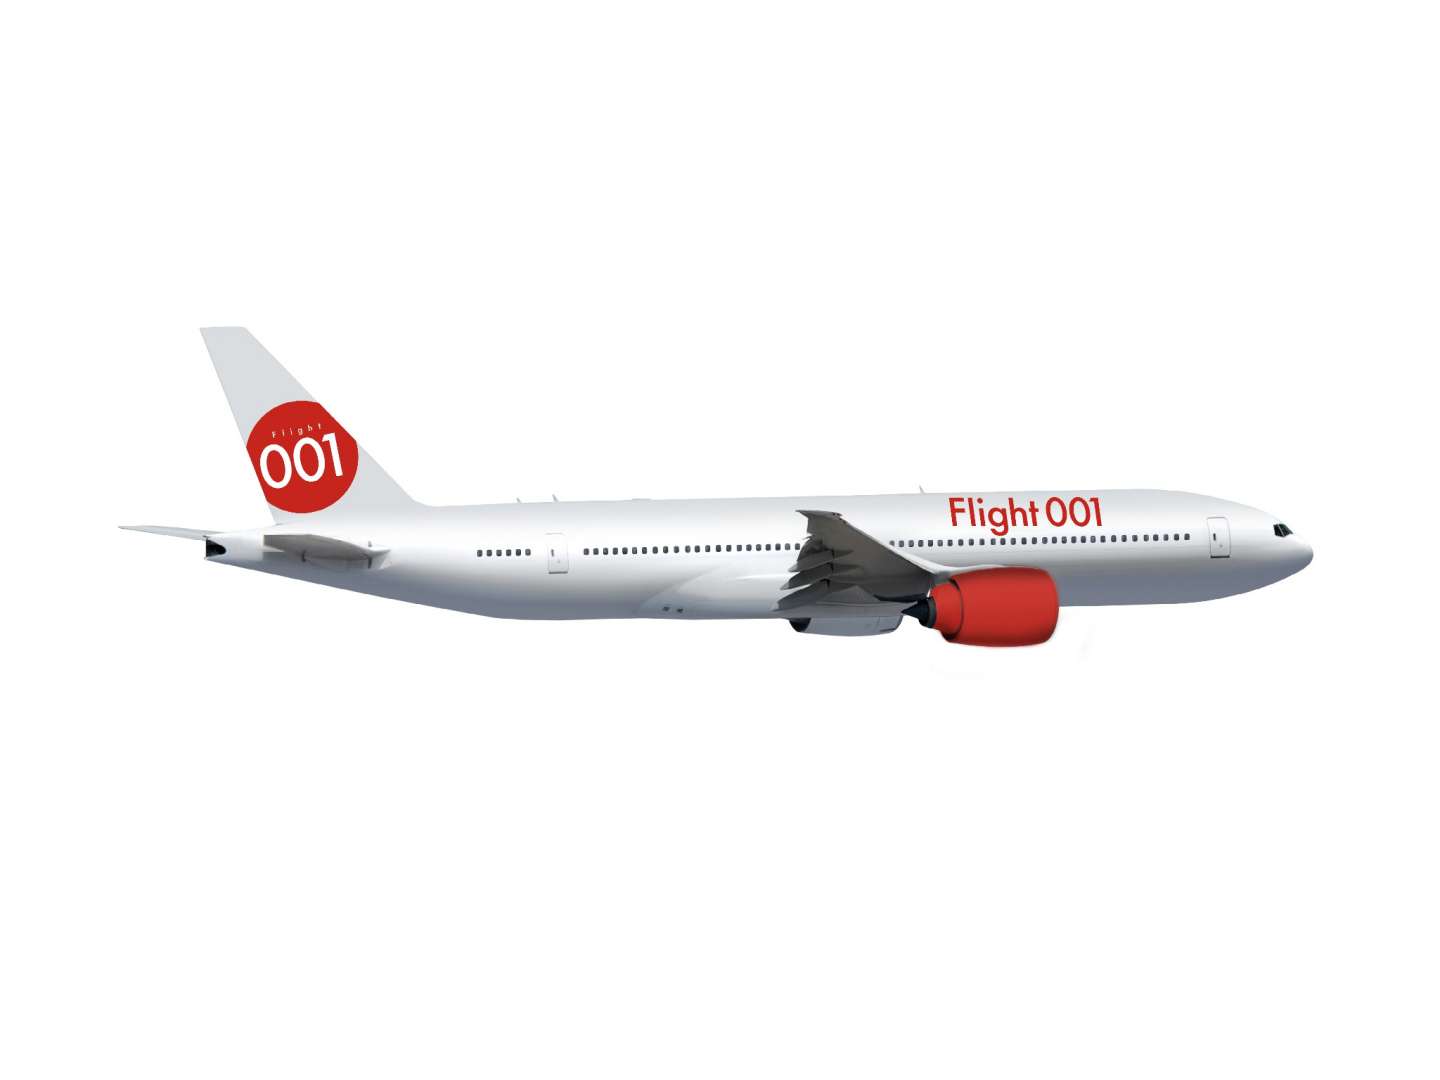 Flight 001 Branding